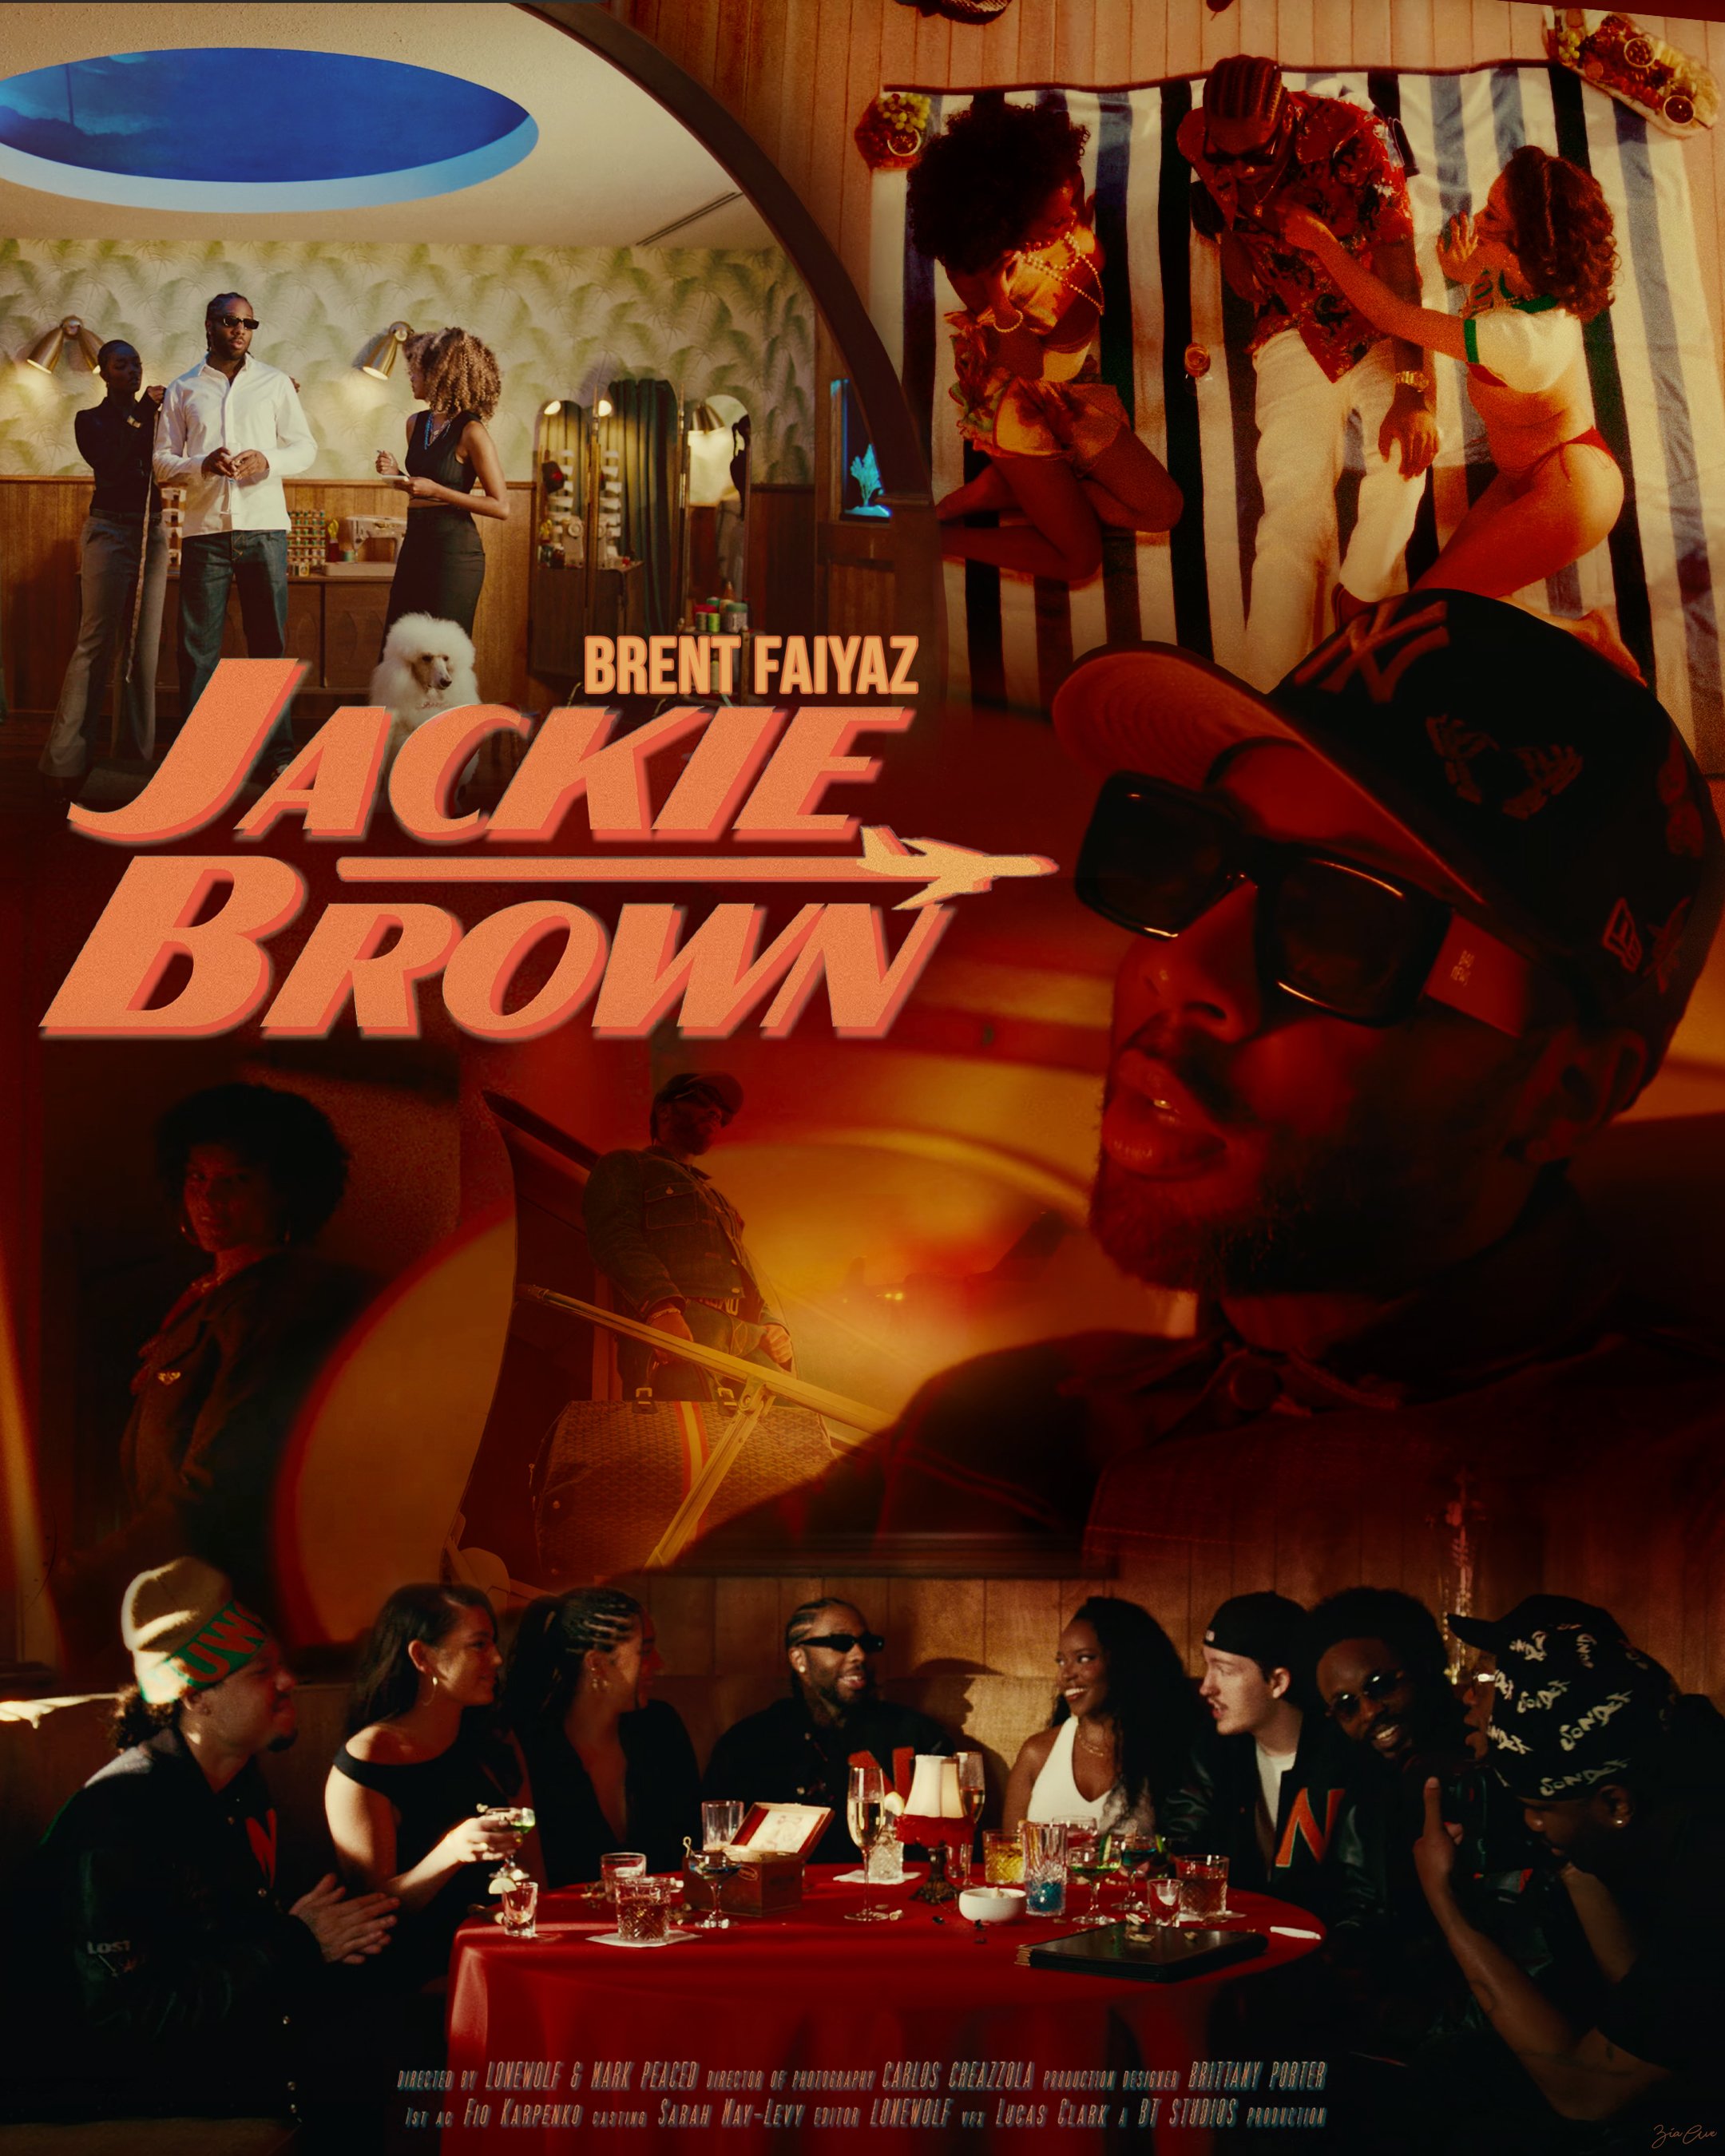 JackieBrown - BrentFaiyaz.jpg